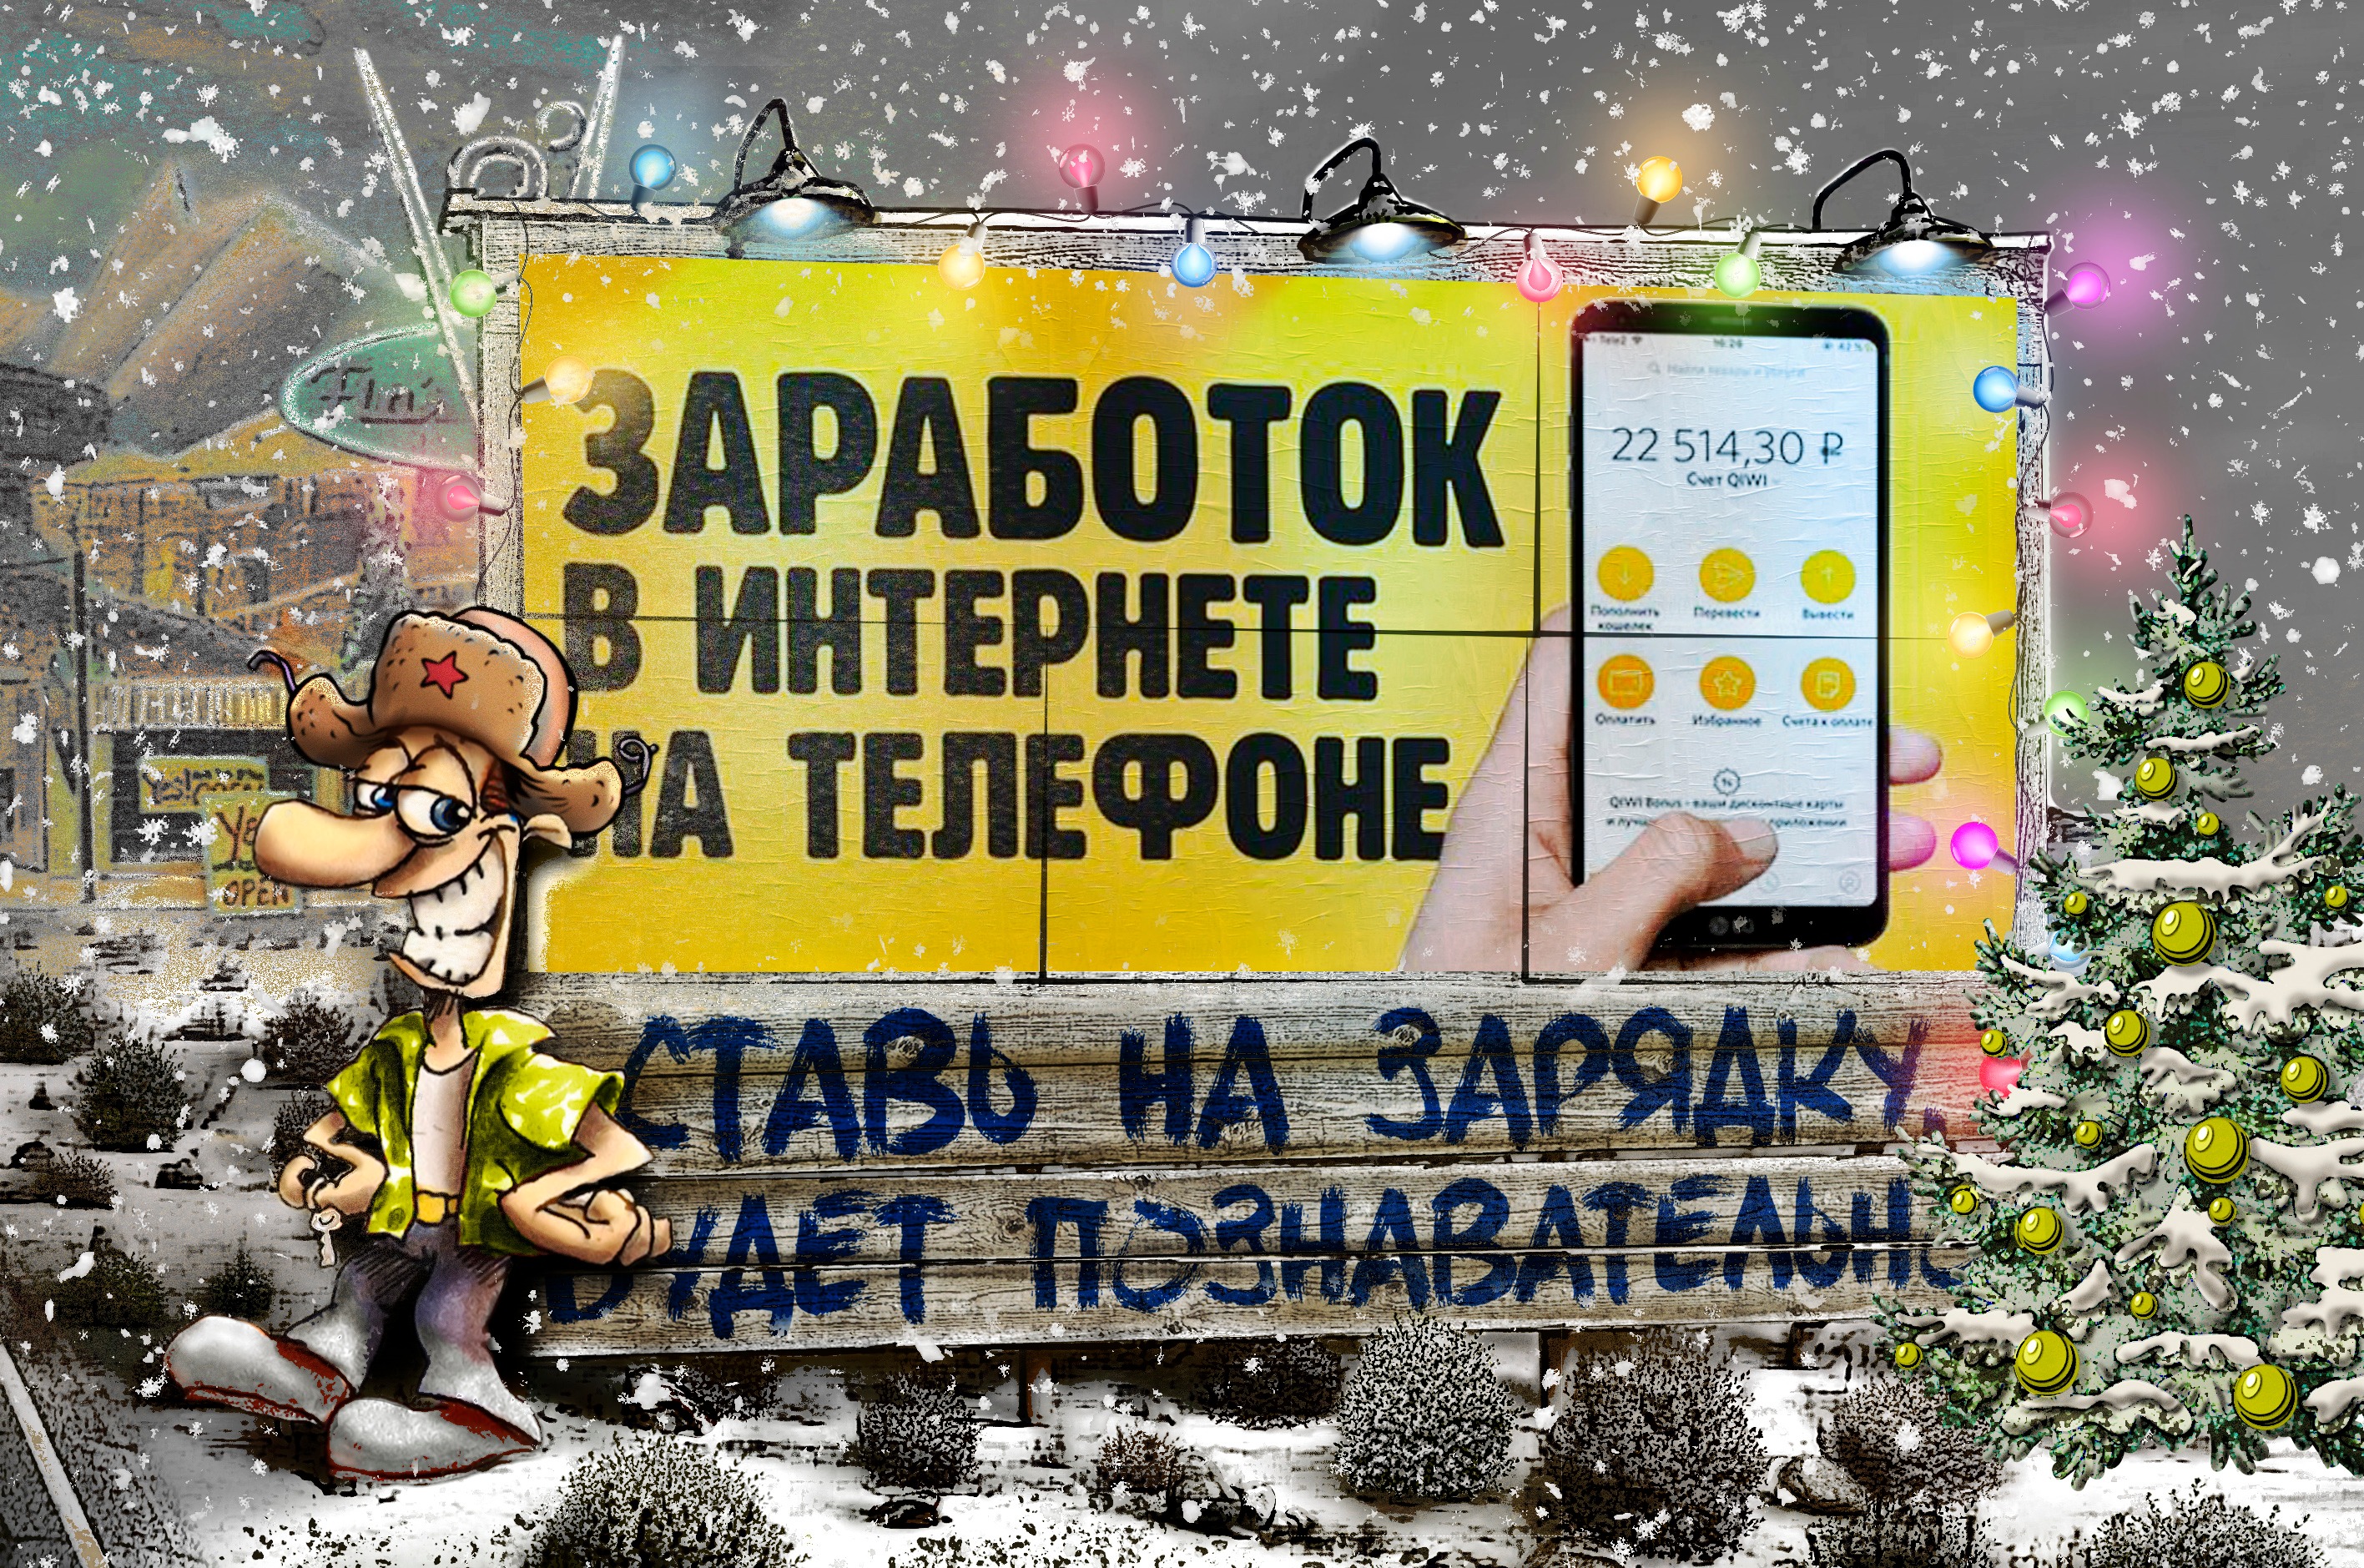 Заработок в телеграмме без вложений на русском с выводом денег фото 107